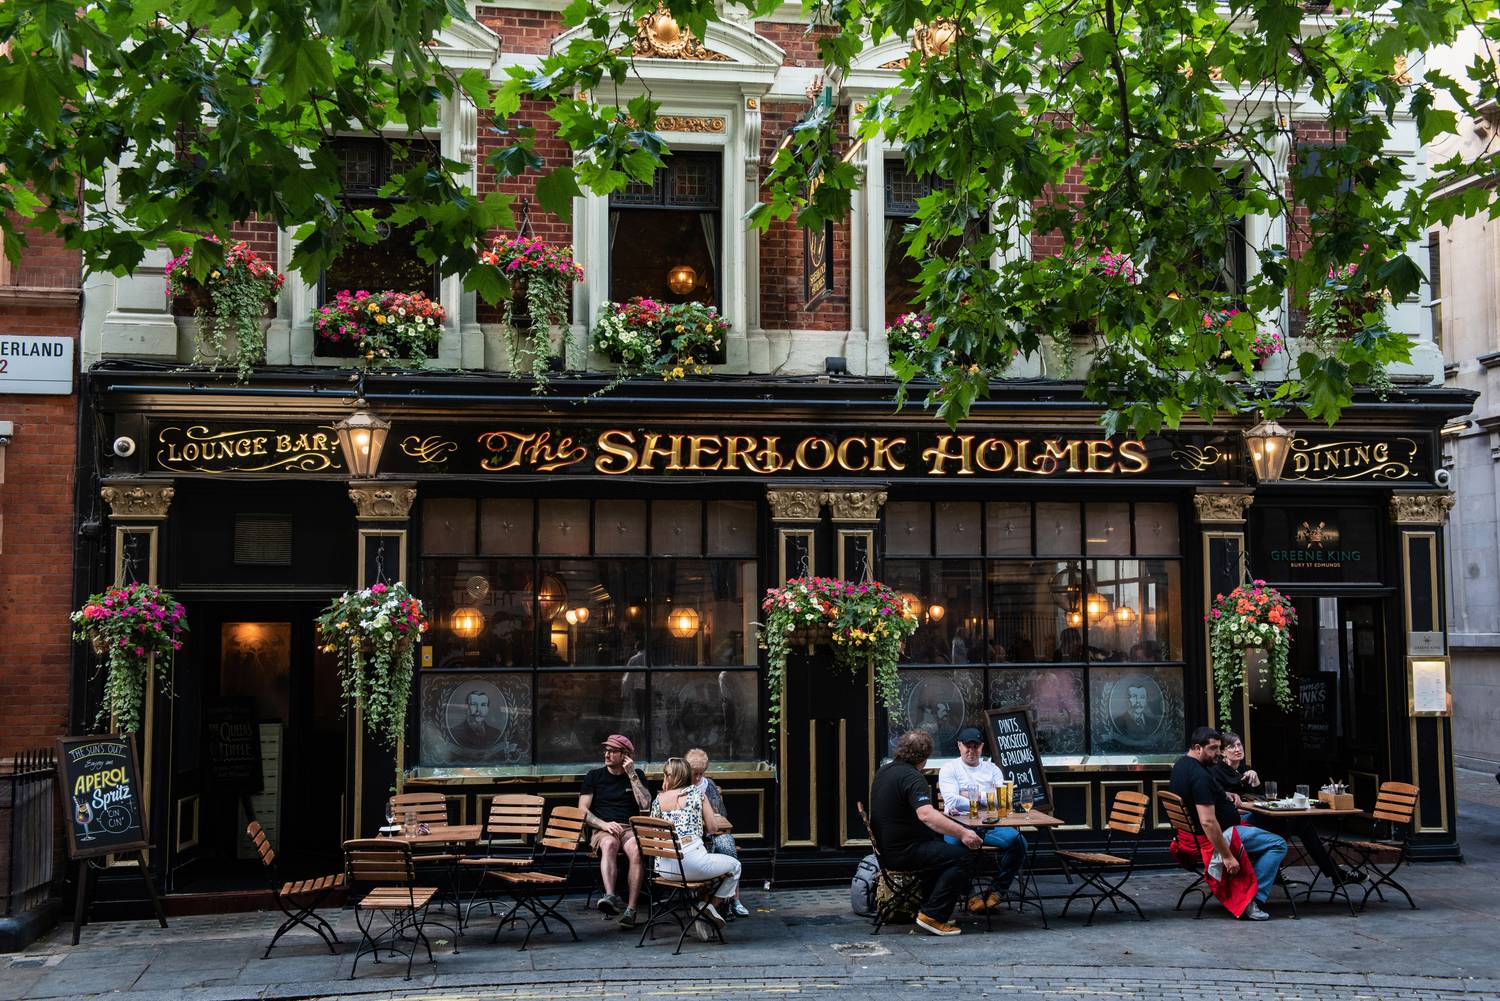 Az első helyezett London lett, ahol több mint 150 könyvesbolt és könyvtár várja az irodalom szerelmeseit, köztük a legnagyobbak közé tartozó British Library. A városban számtalan helyen találkozhatsz Sherlock Holmes nevével, de Dickens regényei, valamint Shakespeare öröksége, Virginia Woolf és George Orwell neve is megkerülhetetlen itt.